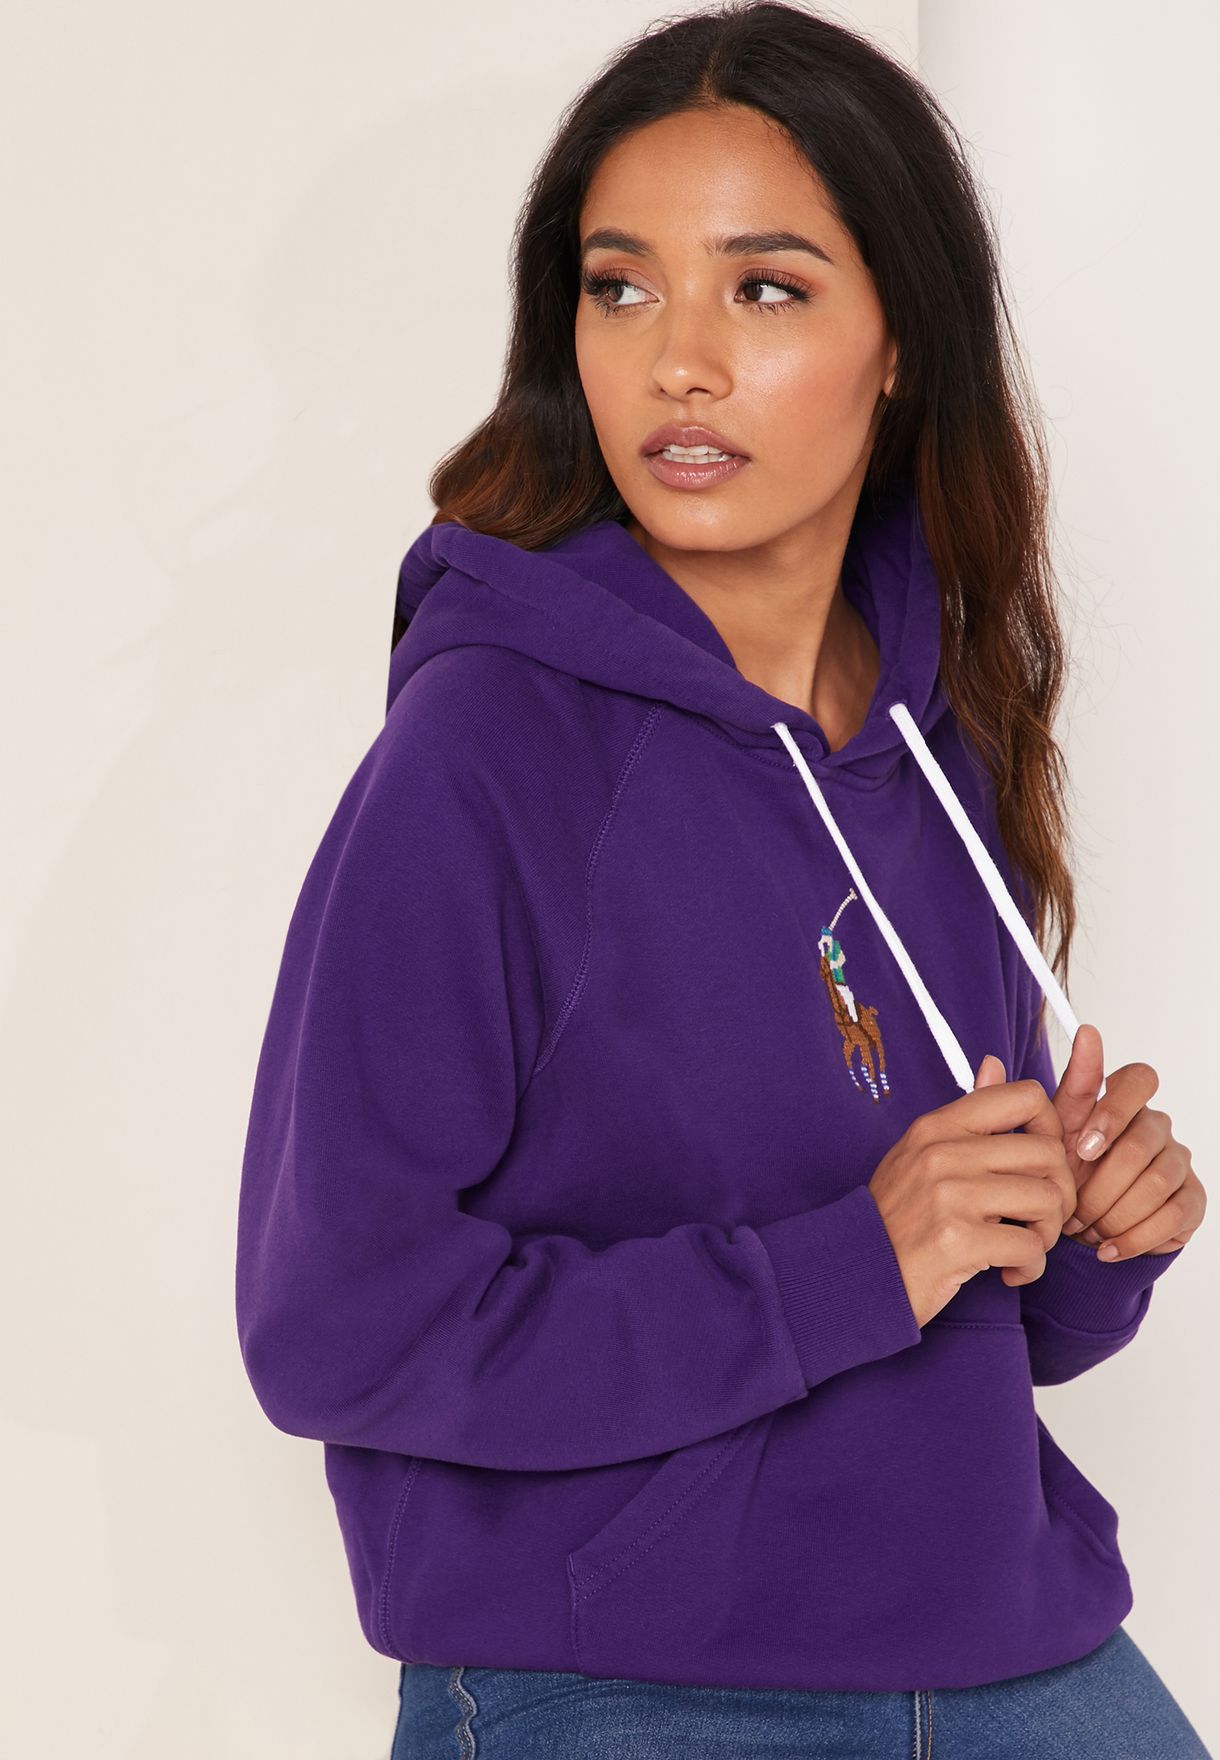 ralph lauren purple hoodie